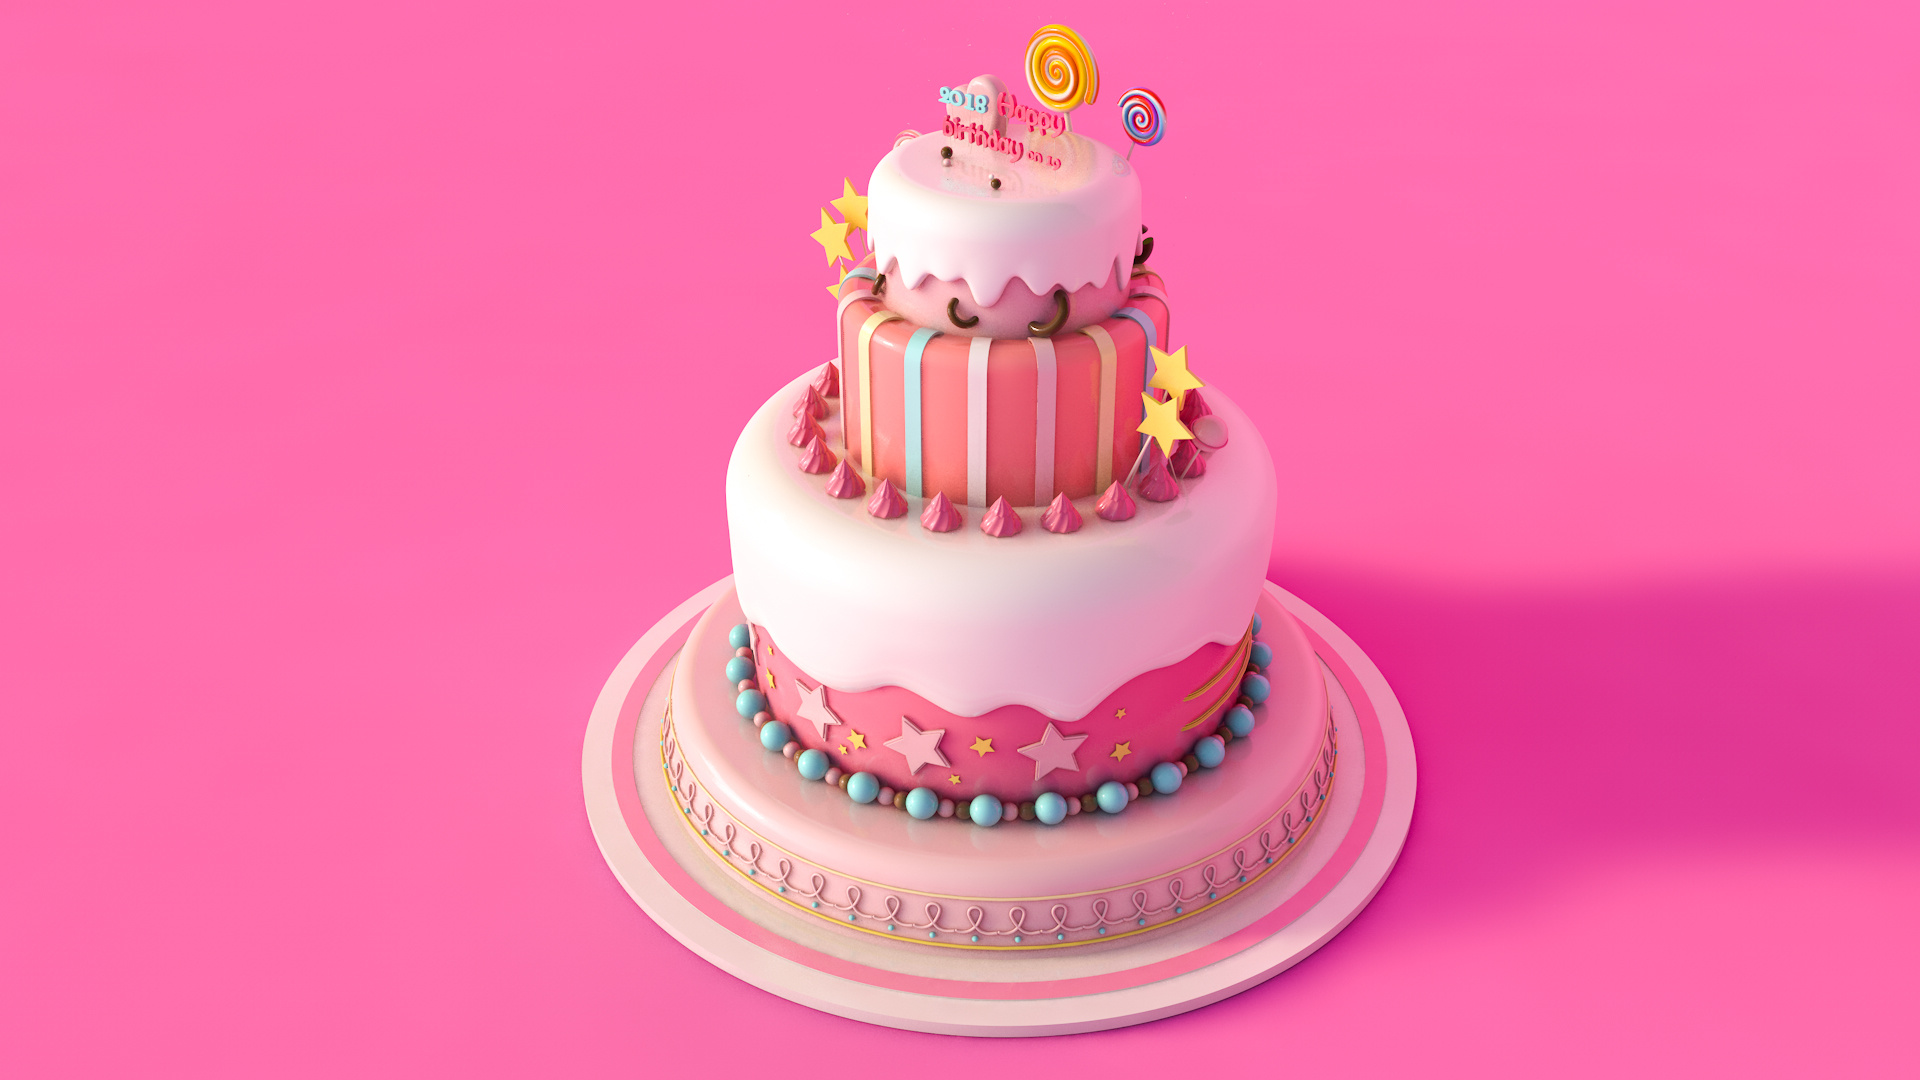 拿着蛋糕的生日快乐小丑 库存图片. 图片 包括有 生日, 懒散, 庆祝, 愉快, 五颜六色, 演艺人员, 招待 - 61743999